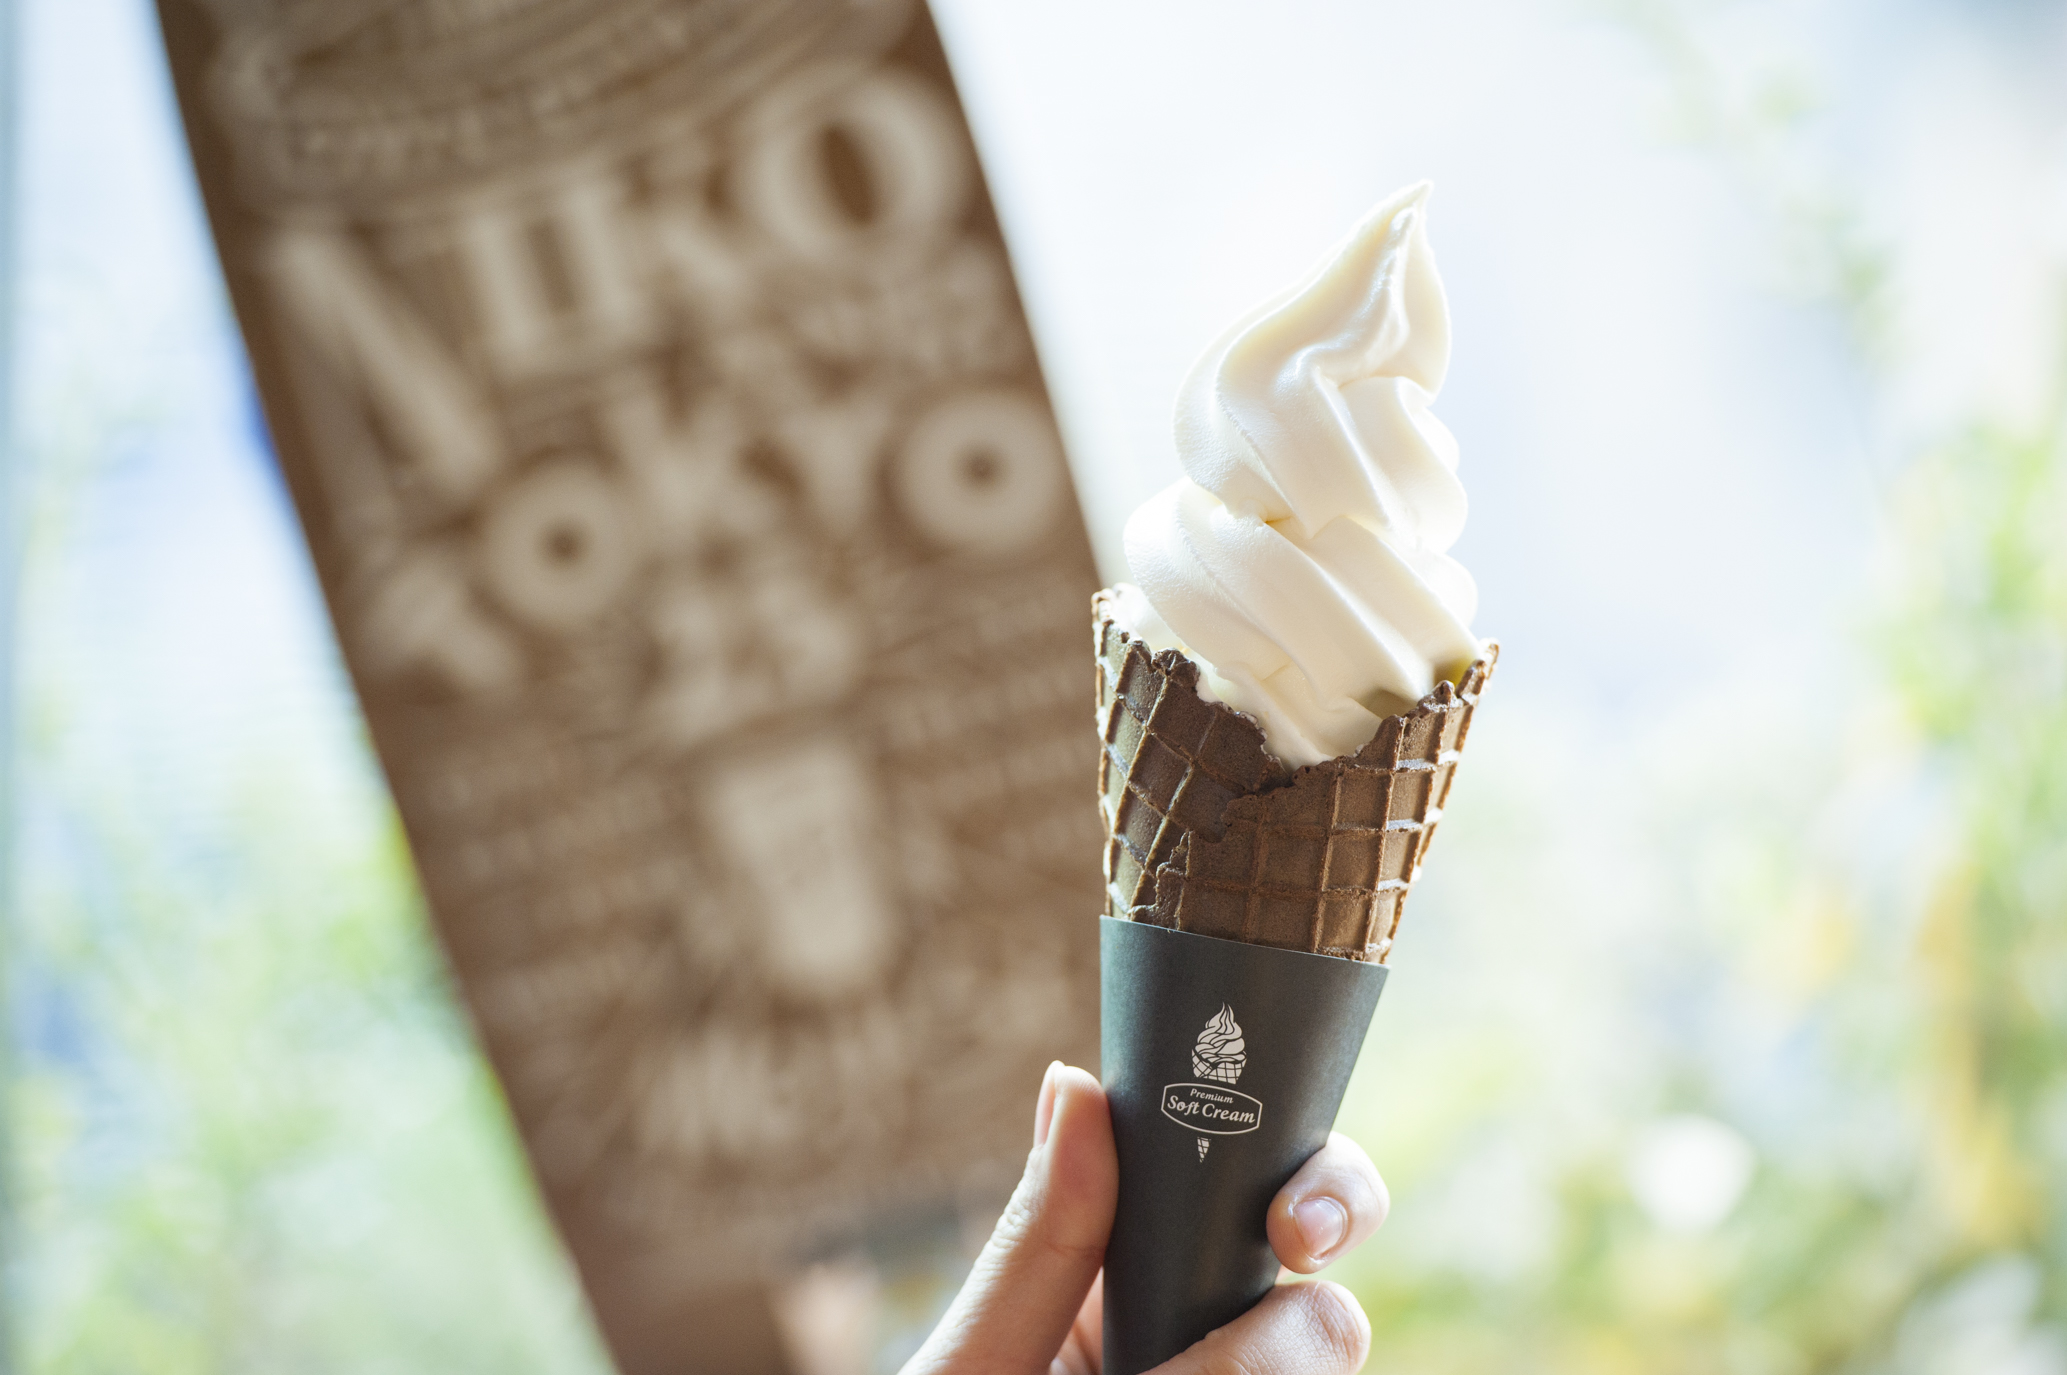 スイーツ激戦区原宿に 北海道4 0牛乳ソフトクリーム が登場 Niko And Tokyoの1階カフェスペース Niko And Coffee で発売 株式会社アダストリアのプレスリリース